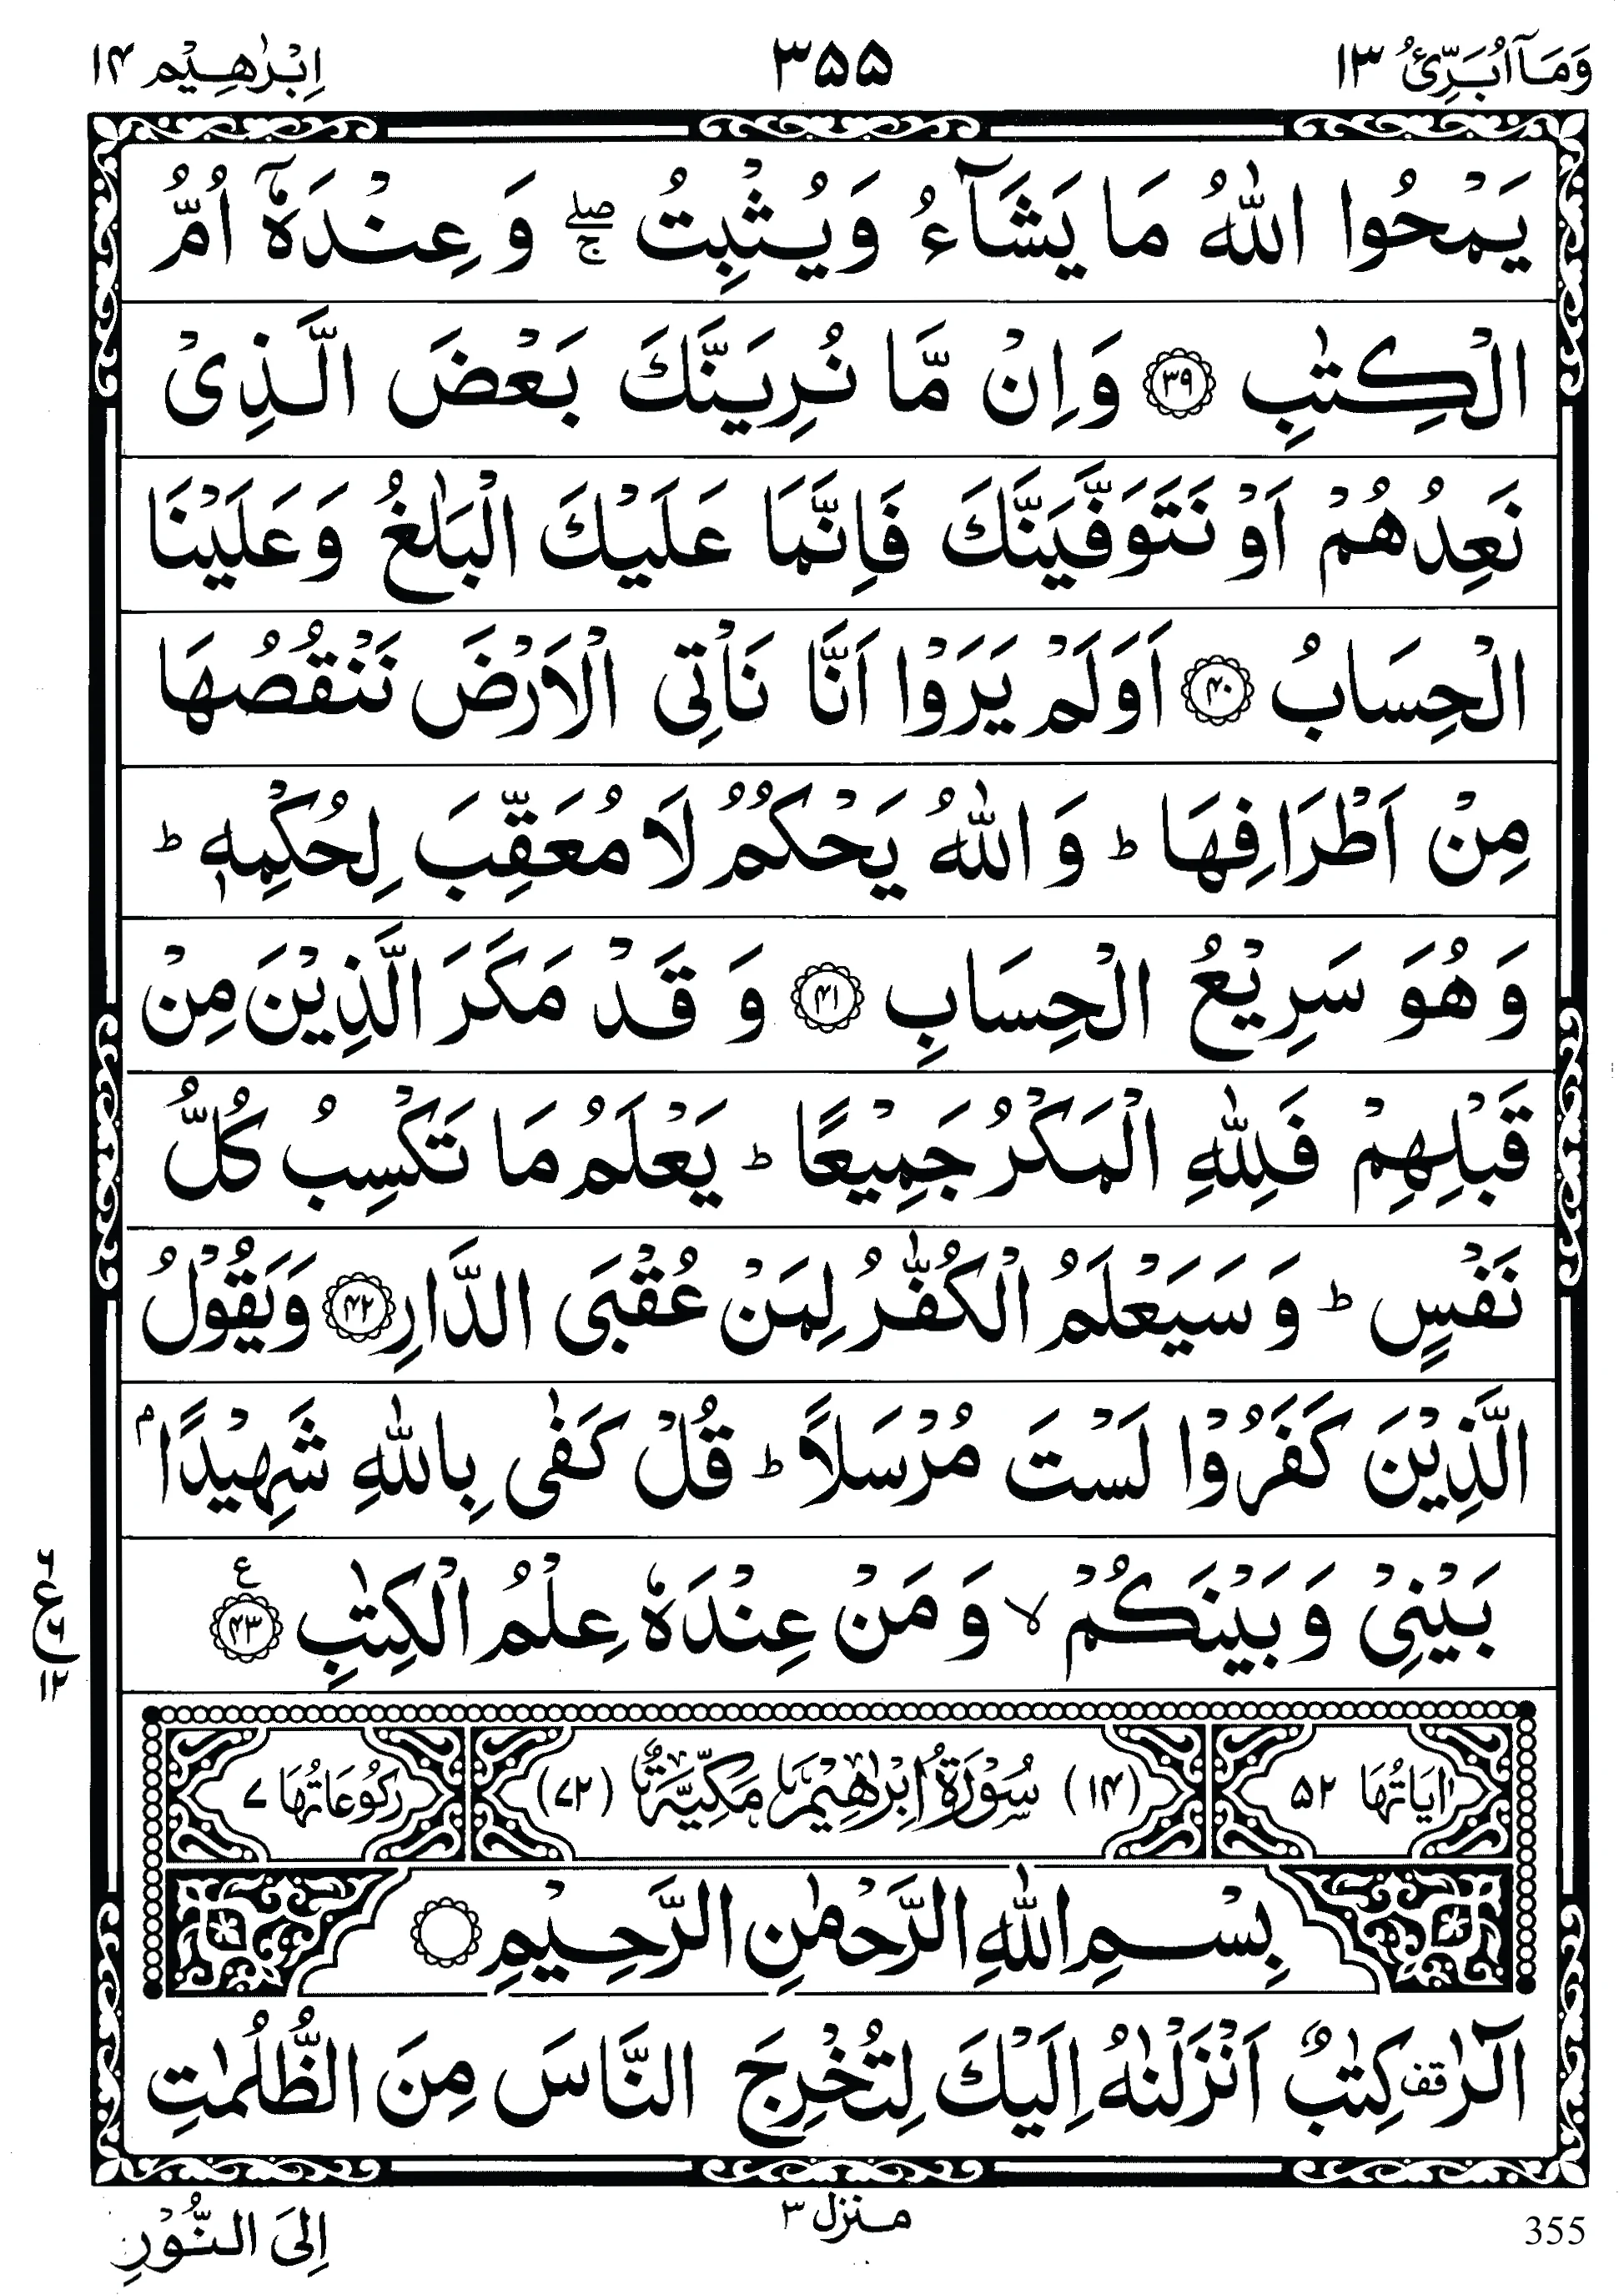 Quran para 13 | Quran para 13 WaMa Ubariyo | WaMa Ubariyo | Quran sipara 13 | Para 13 | 13th Para Recite Online and PDF| Quran Wazaif